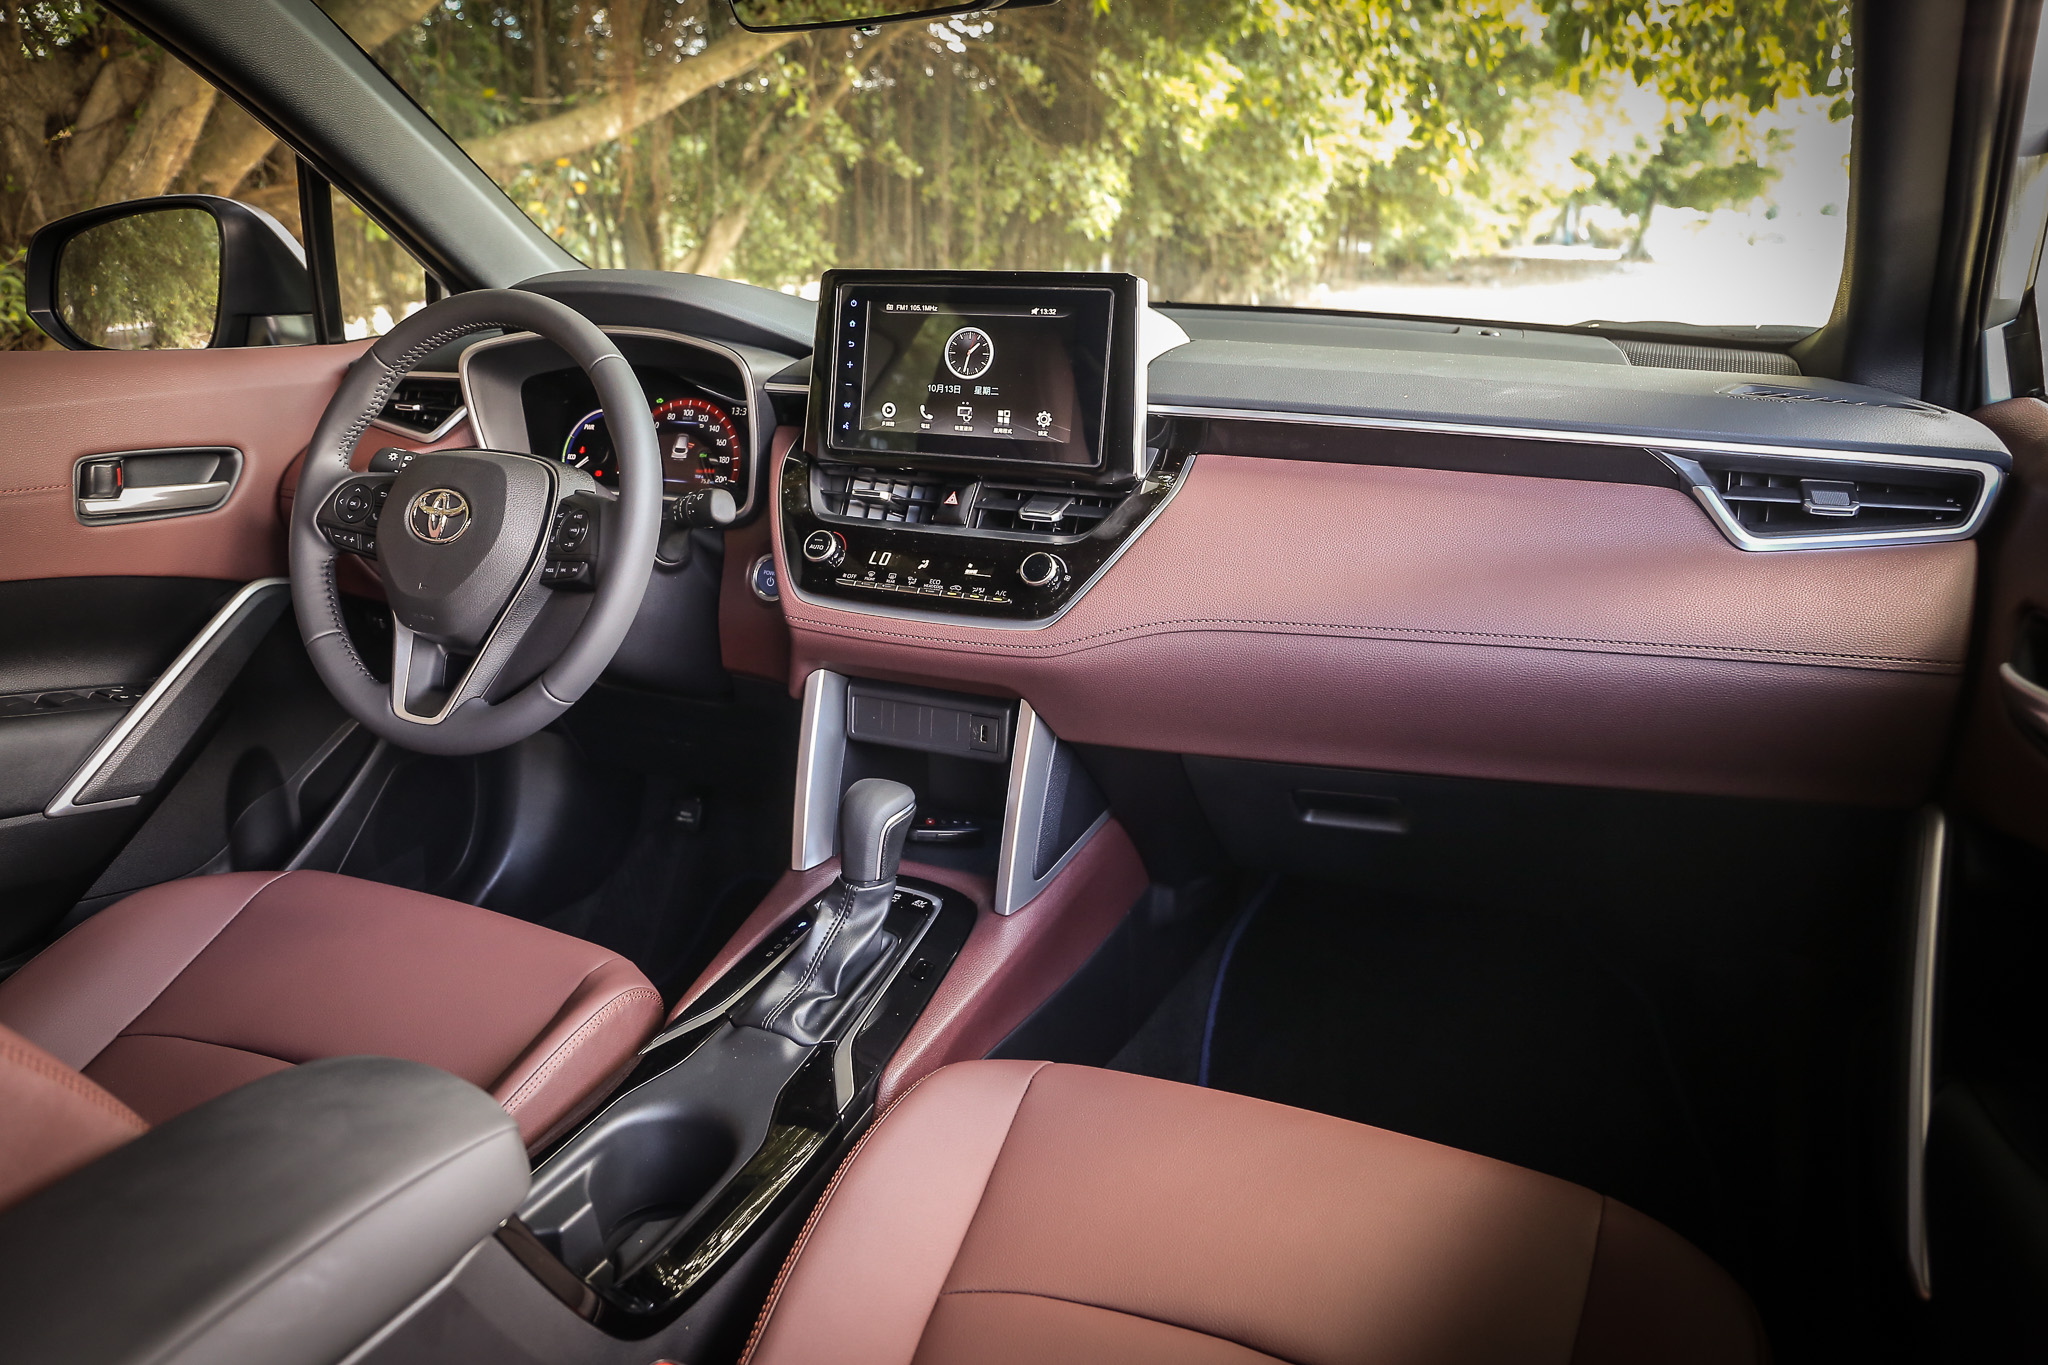 座艙設計風格與 Corolla Altis 相當雷同，透過中控螢幕的整合大幅簡化控制介面的繁複度，換來更好的空間與視野。